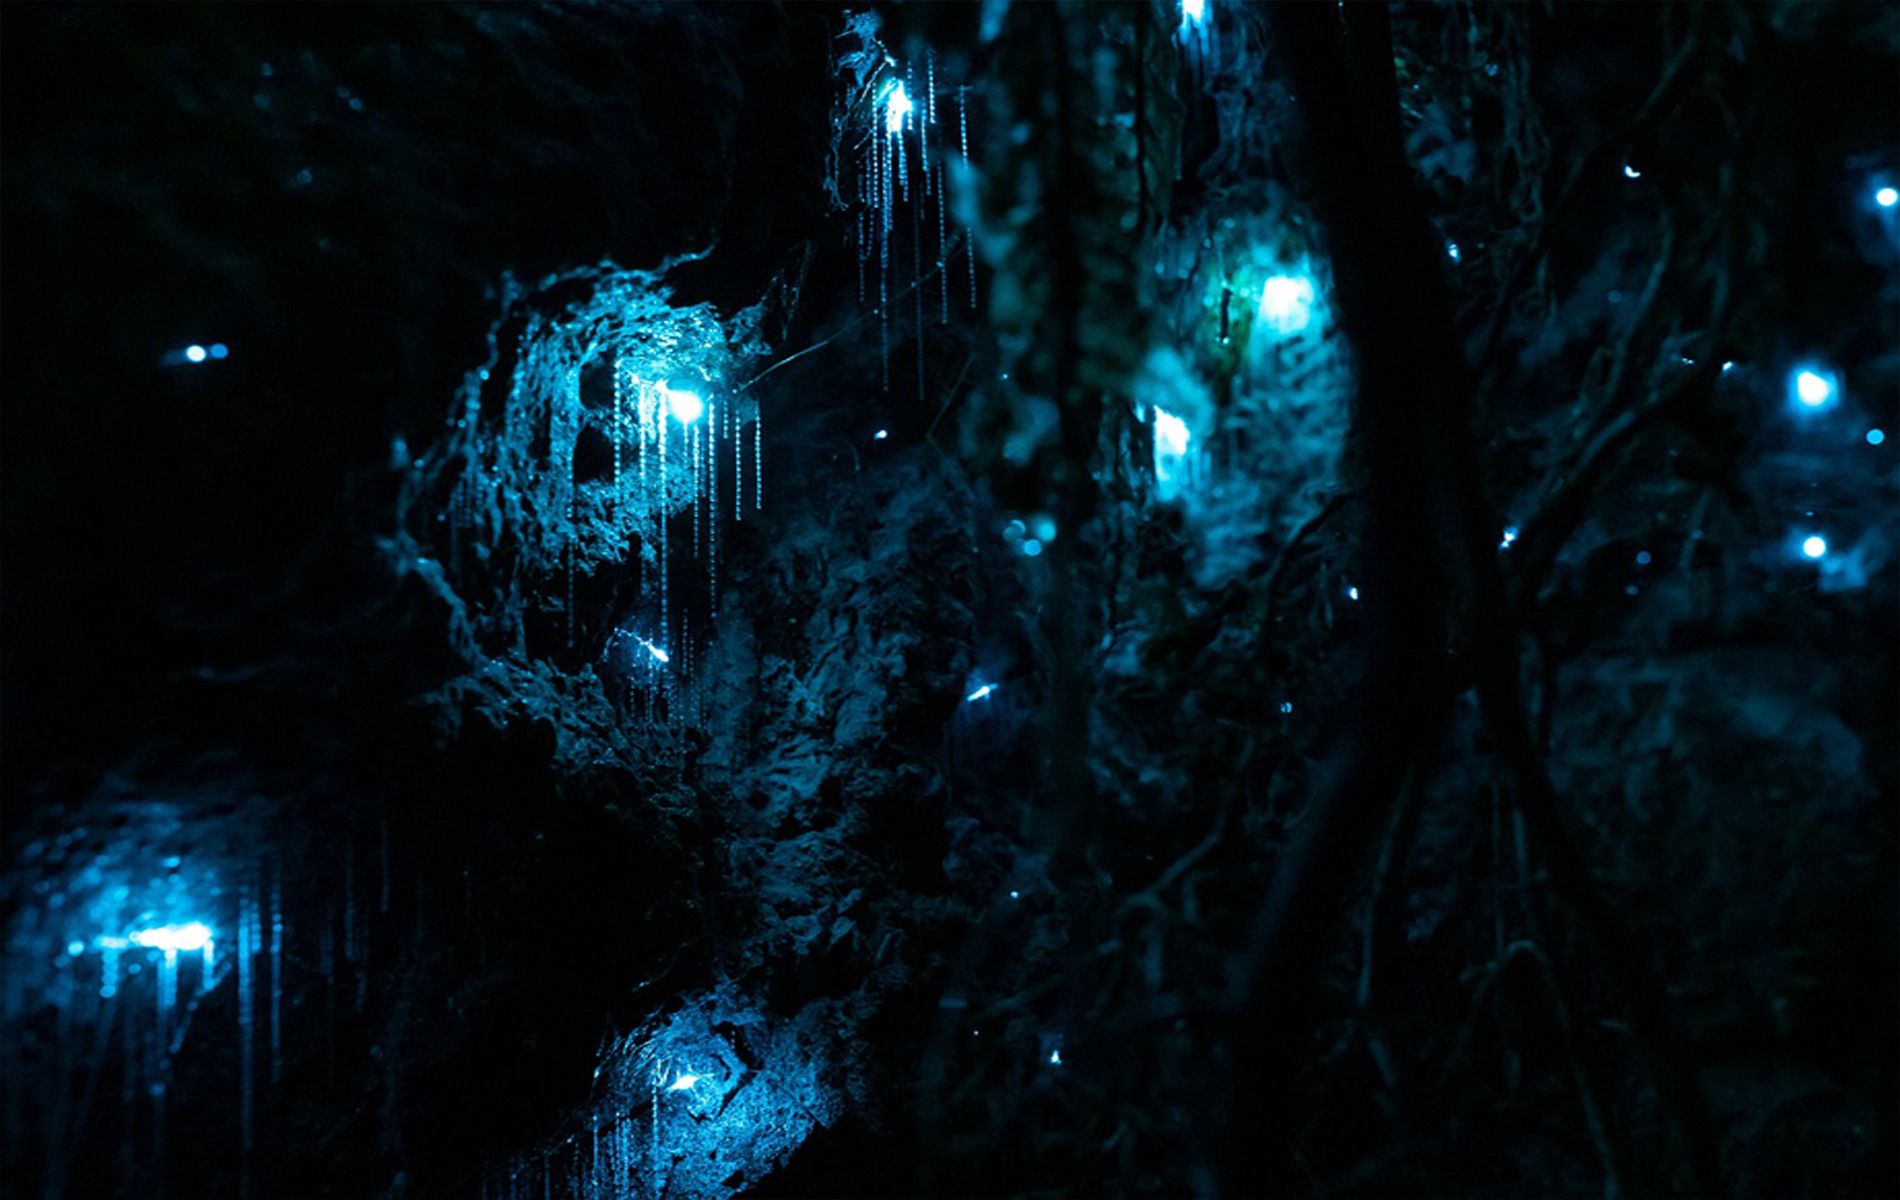 Di sini, kamu akan menemukan gua yang dipenuhi dengan cacing bercahaya yang menghasilkan efek indah bagaikan lautan bintang